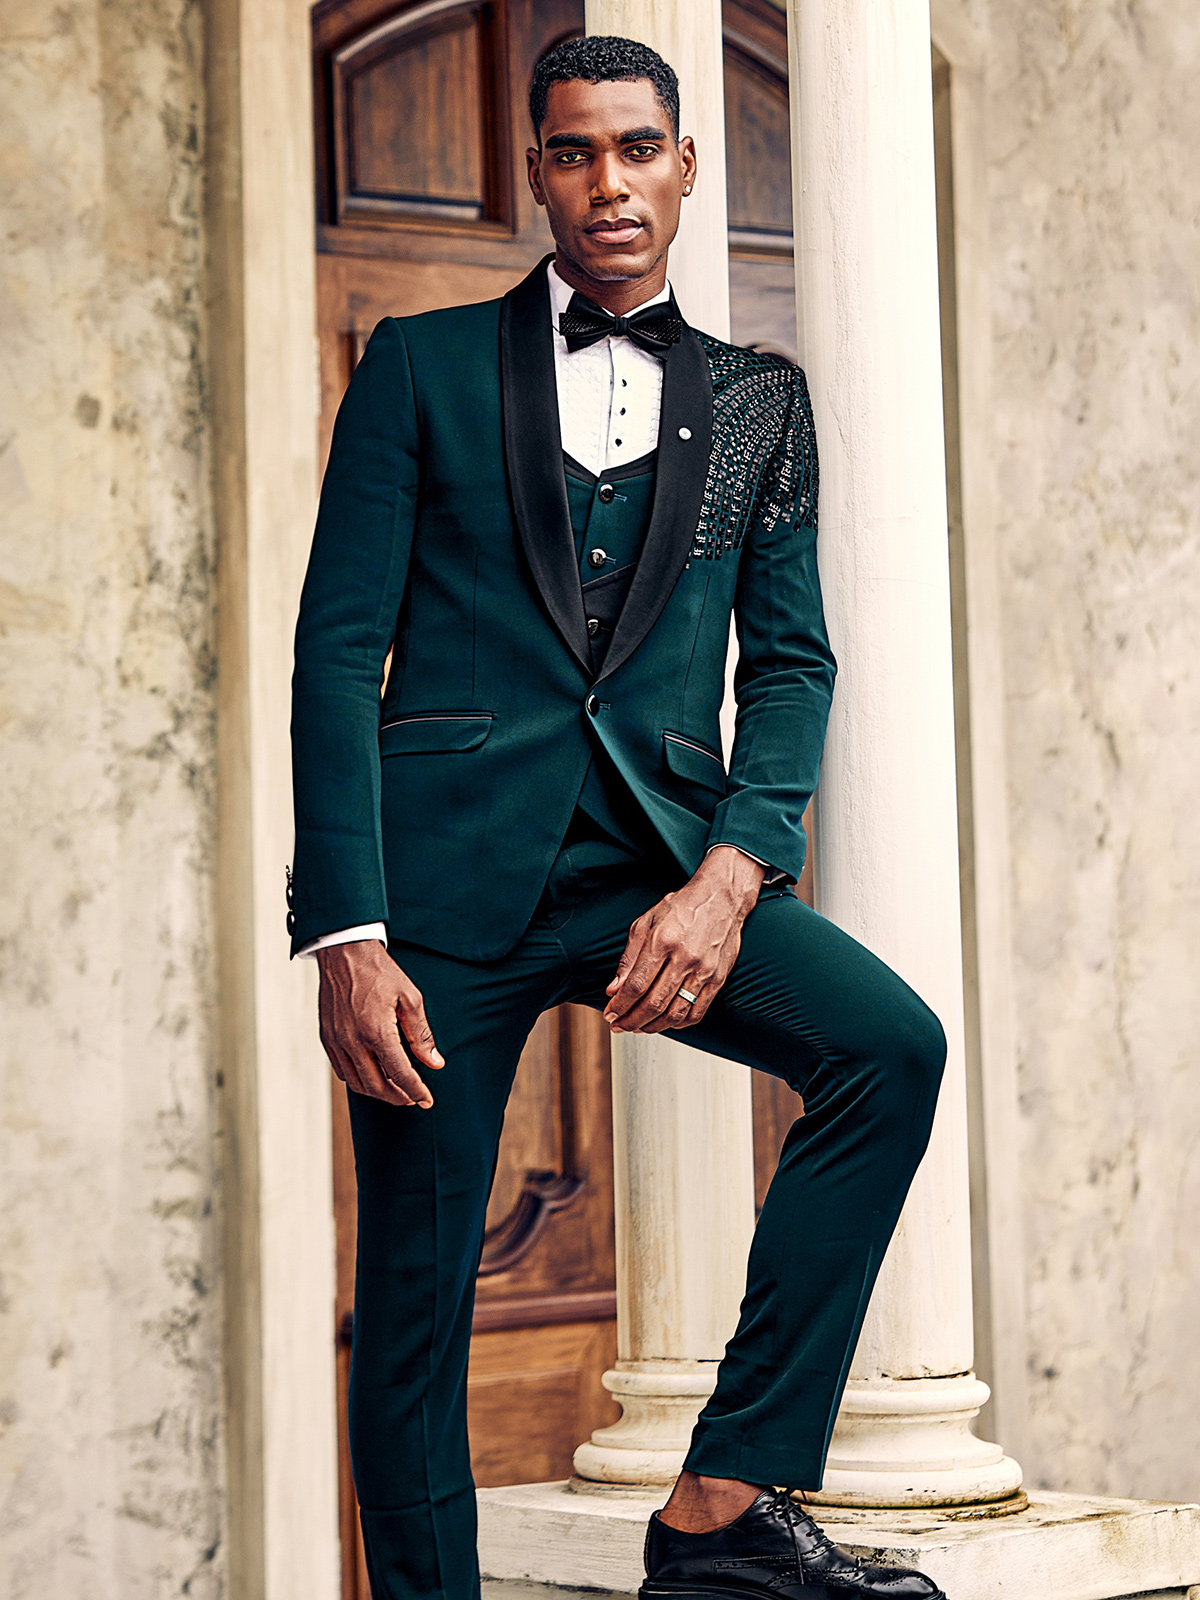 Men's Coat Suit - Buy Exclusive Men Wedding Suits Collection Online at G3NXT